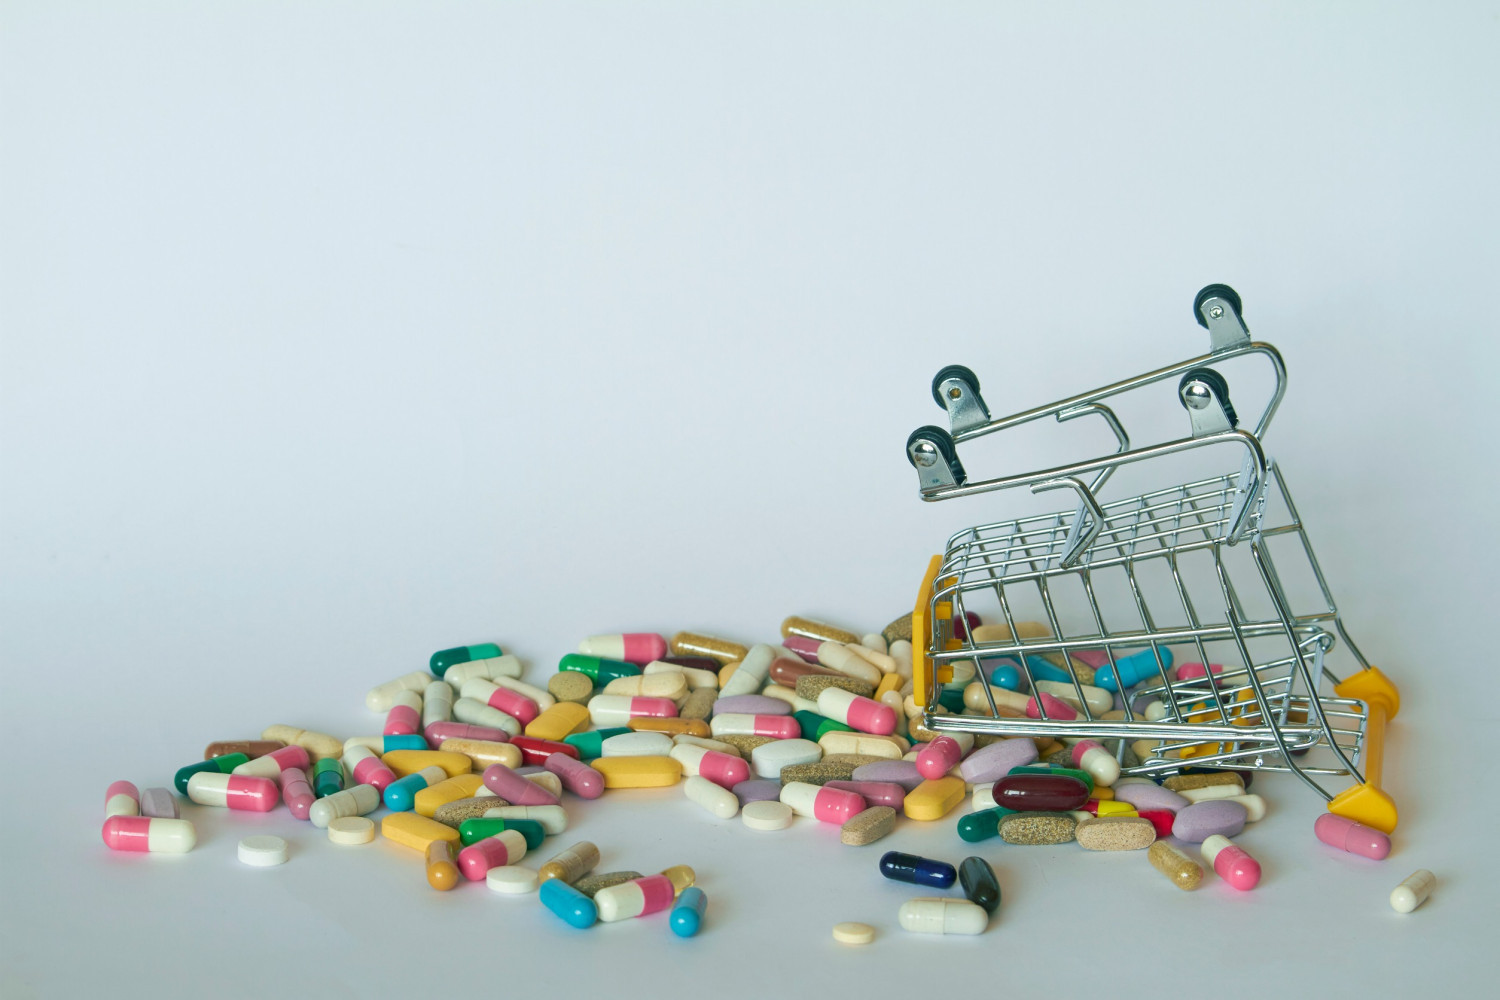 Росстат сообщил о росте цен на лекарства из Перечня ЖНВЛП на 1% в июне